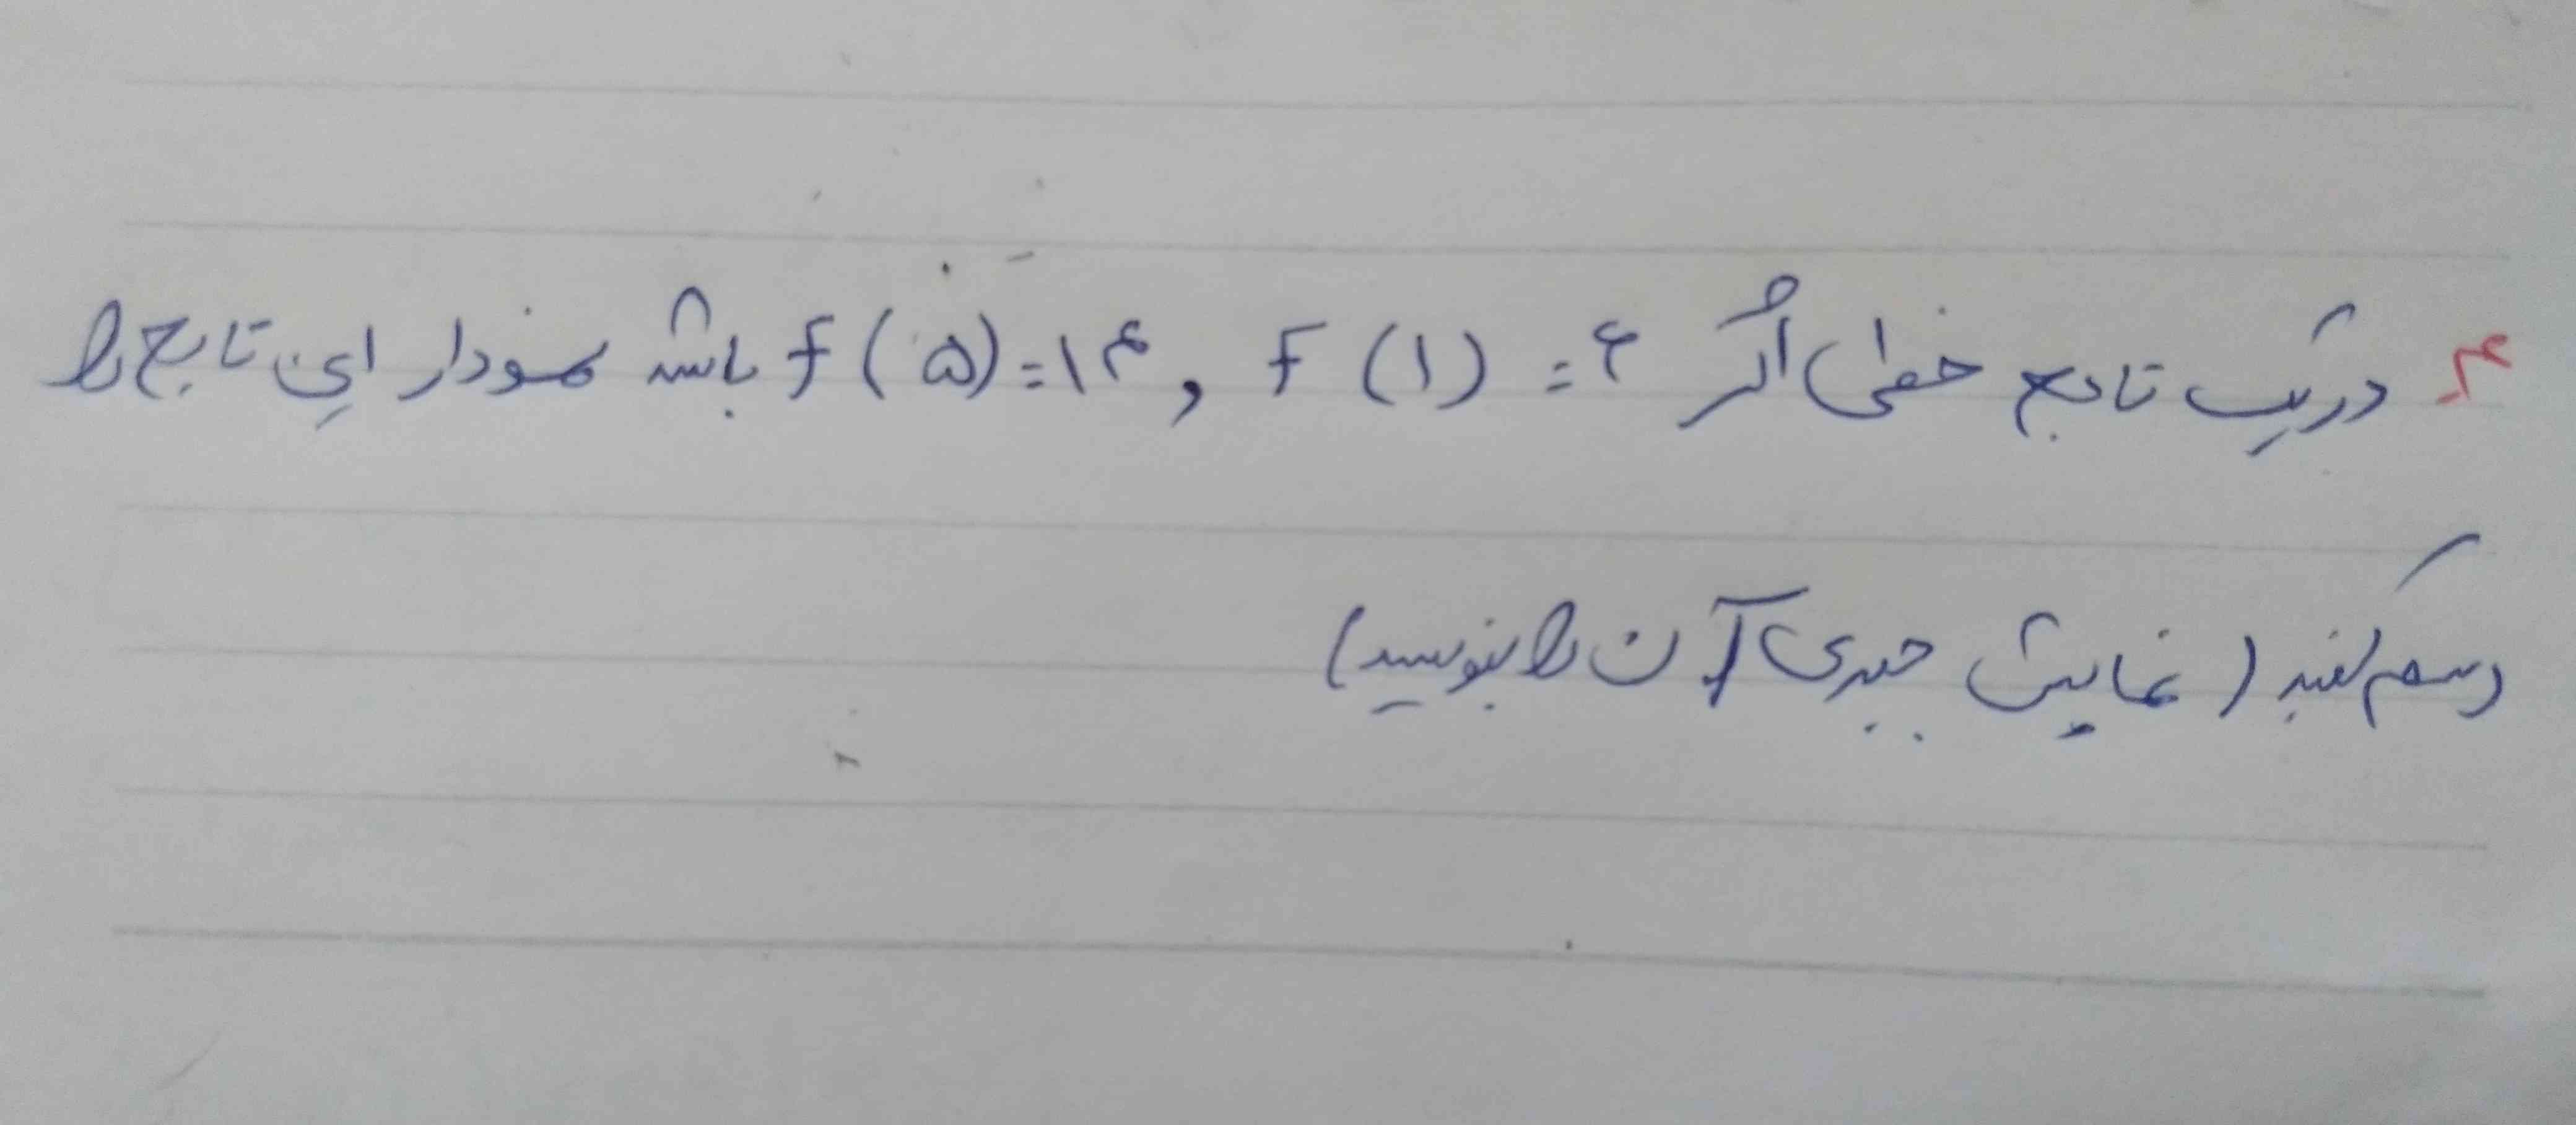 دریک تابع خطی اگر 6=(1)Fو14=(5)Fباشد نموداراین تابع را رسم کنید(نمایش جبری آن رابنویسید